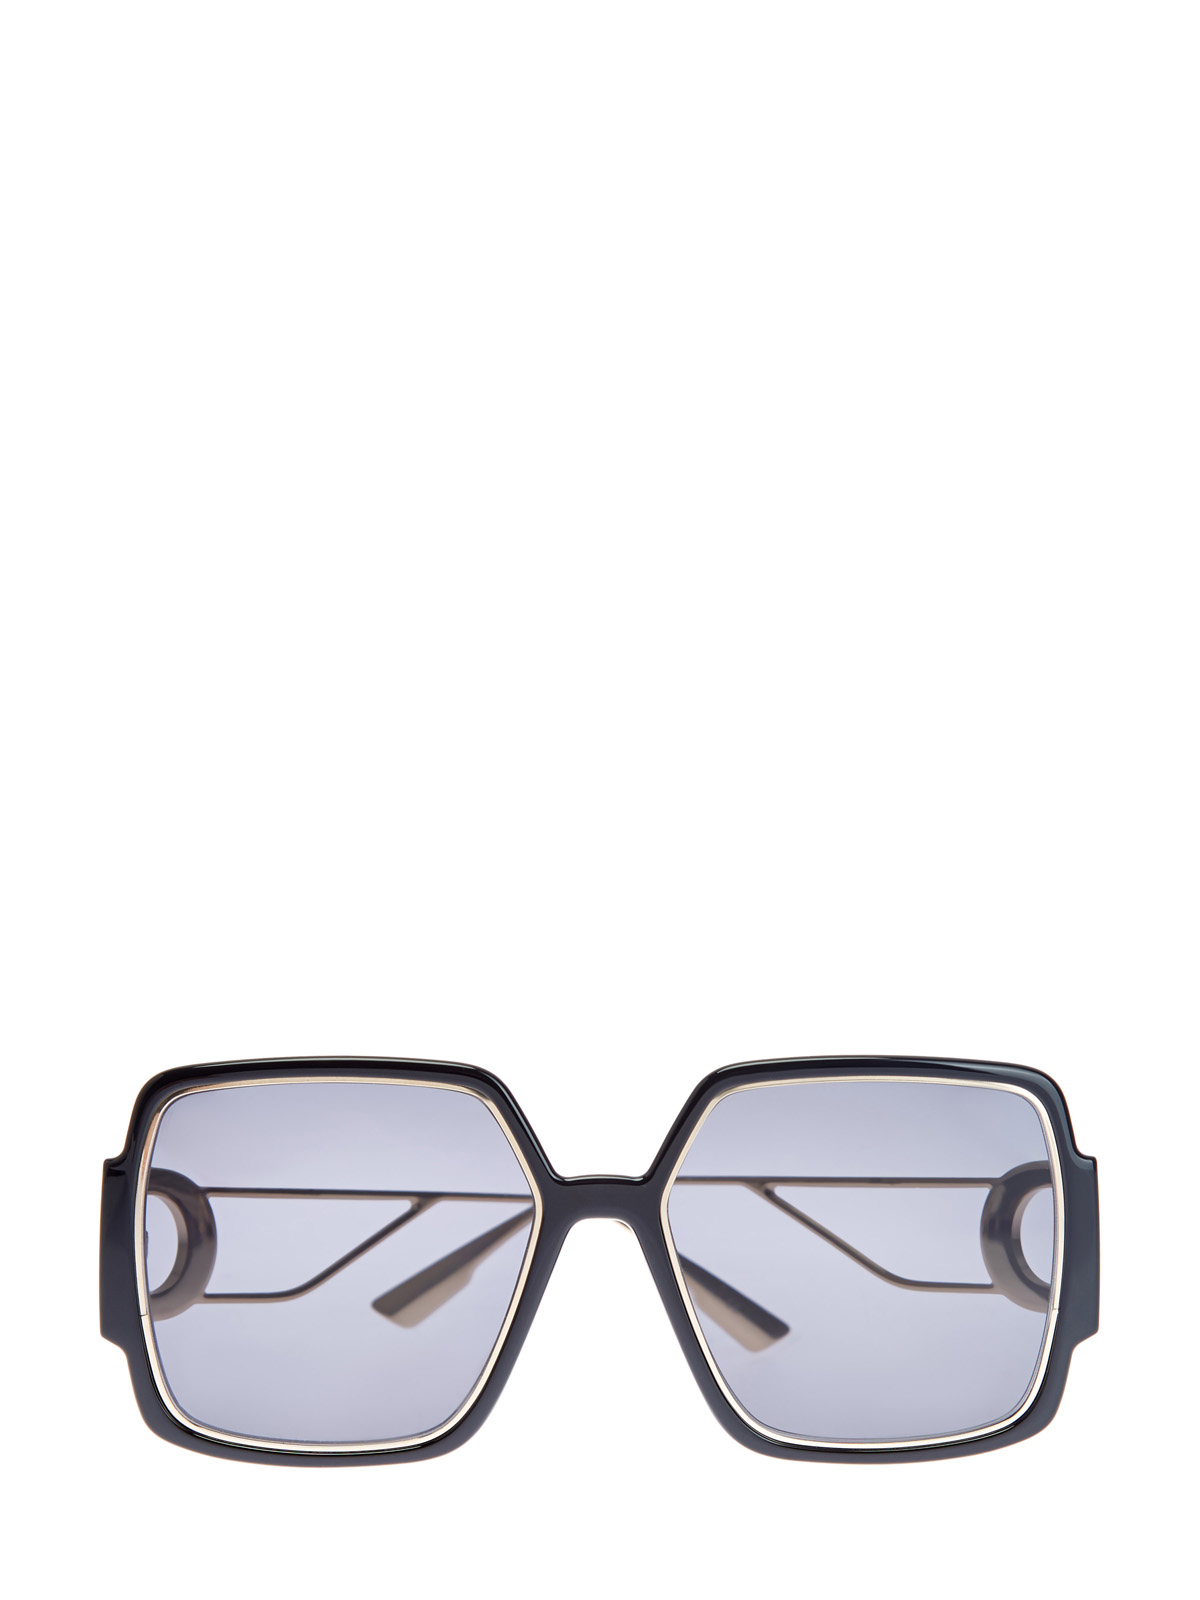 Солнцезащитные очки 30Montaigne2 с логотипом CD на дужках DIOR (sunglasses) women, цвет черный, размер 5;5.5;6;6.5;7;7.5;8;9;10